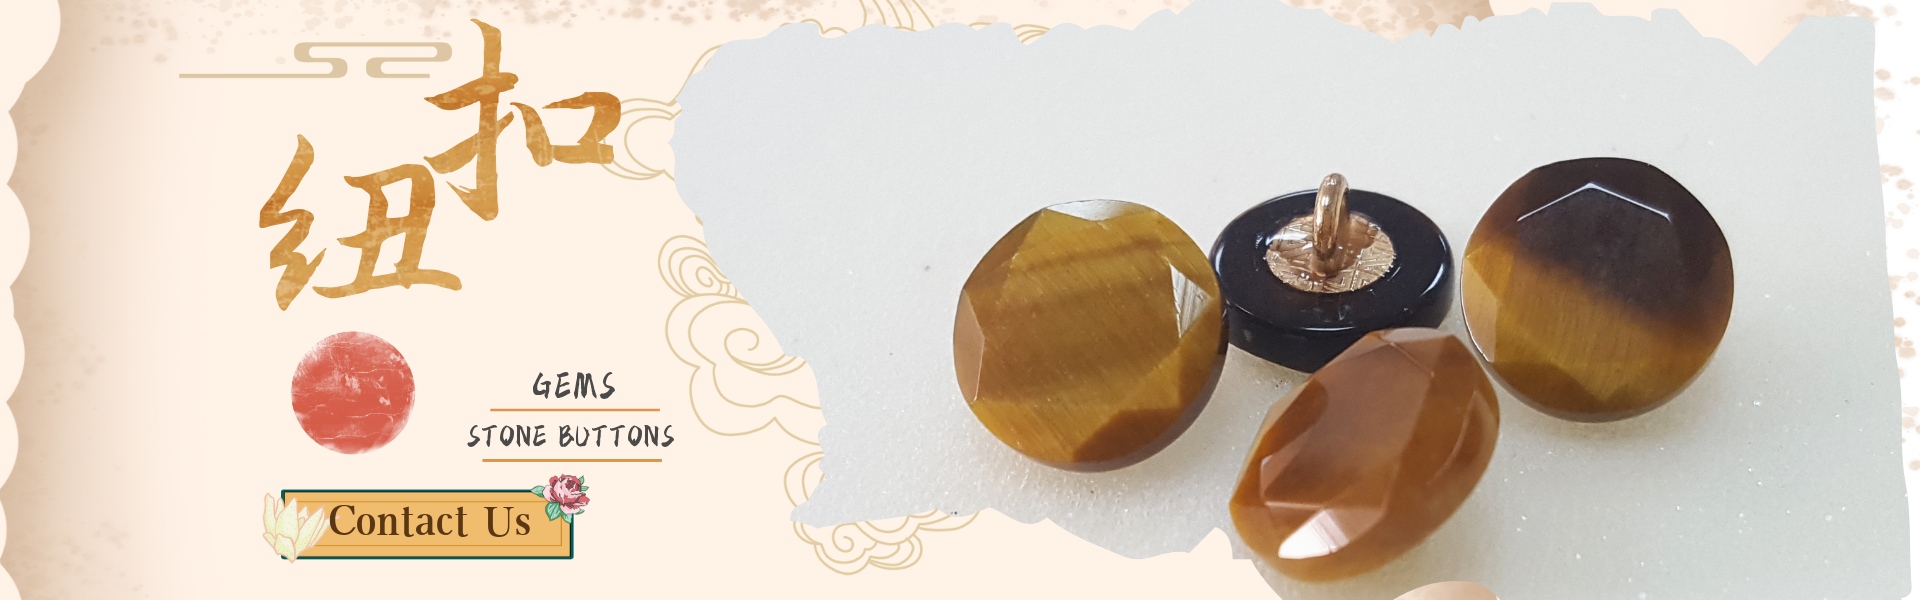 Gemas, botões de pedra,jade,Dongguan ZIZO Arts and Crafts Co. LTD